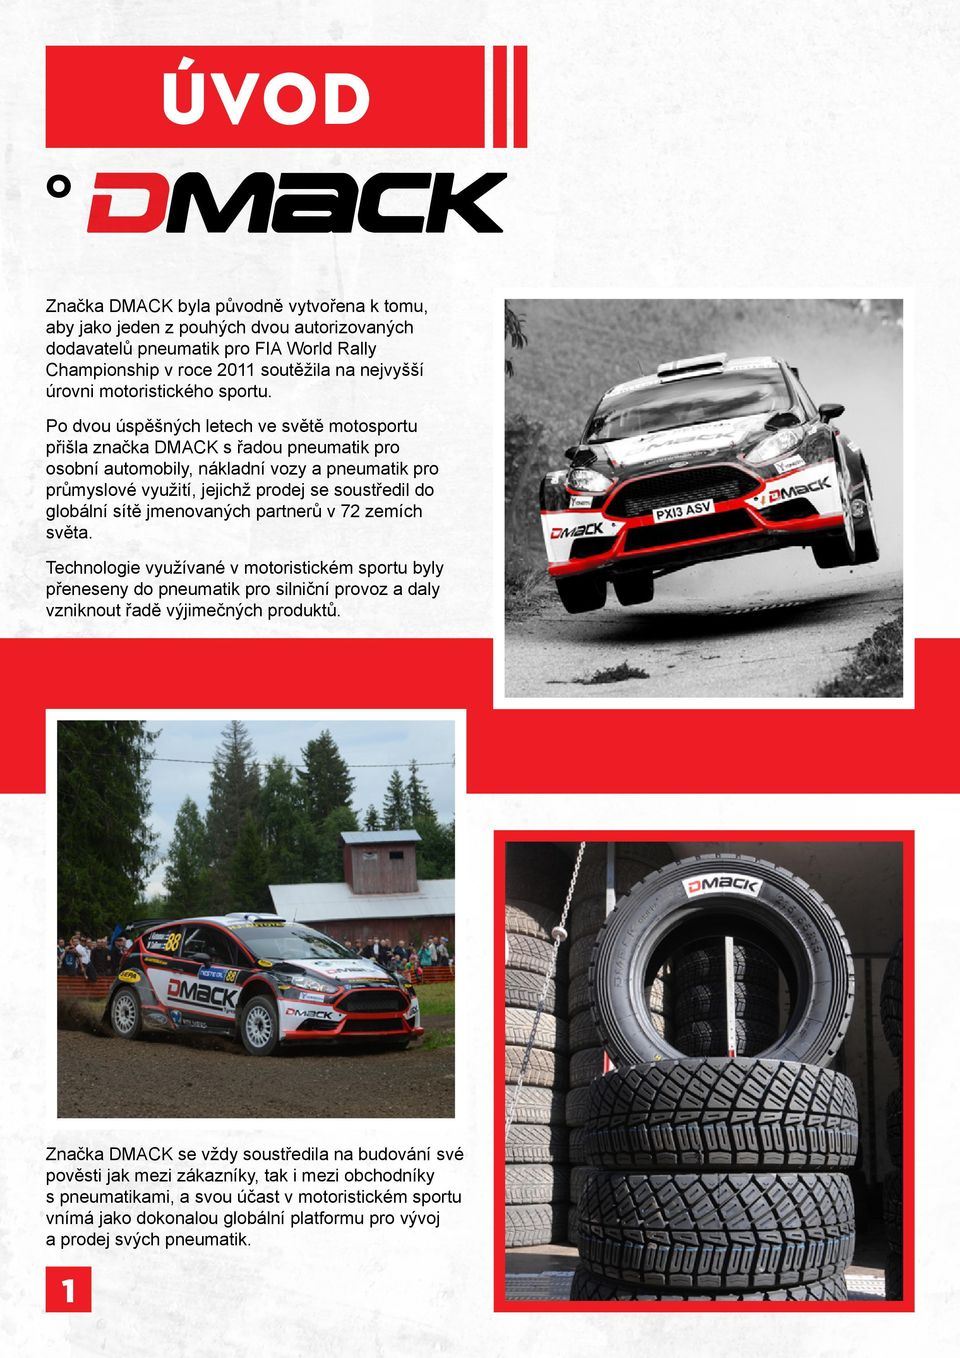 Po dvou úspěšných letech ve světě motosportu přišla značka DMACK s řadou pneumatik pro osobní automobily, nákladní vozy a pneumatik pro průmyslové využití, jejichž prodej se soustředil do globální